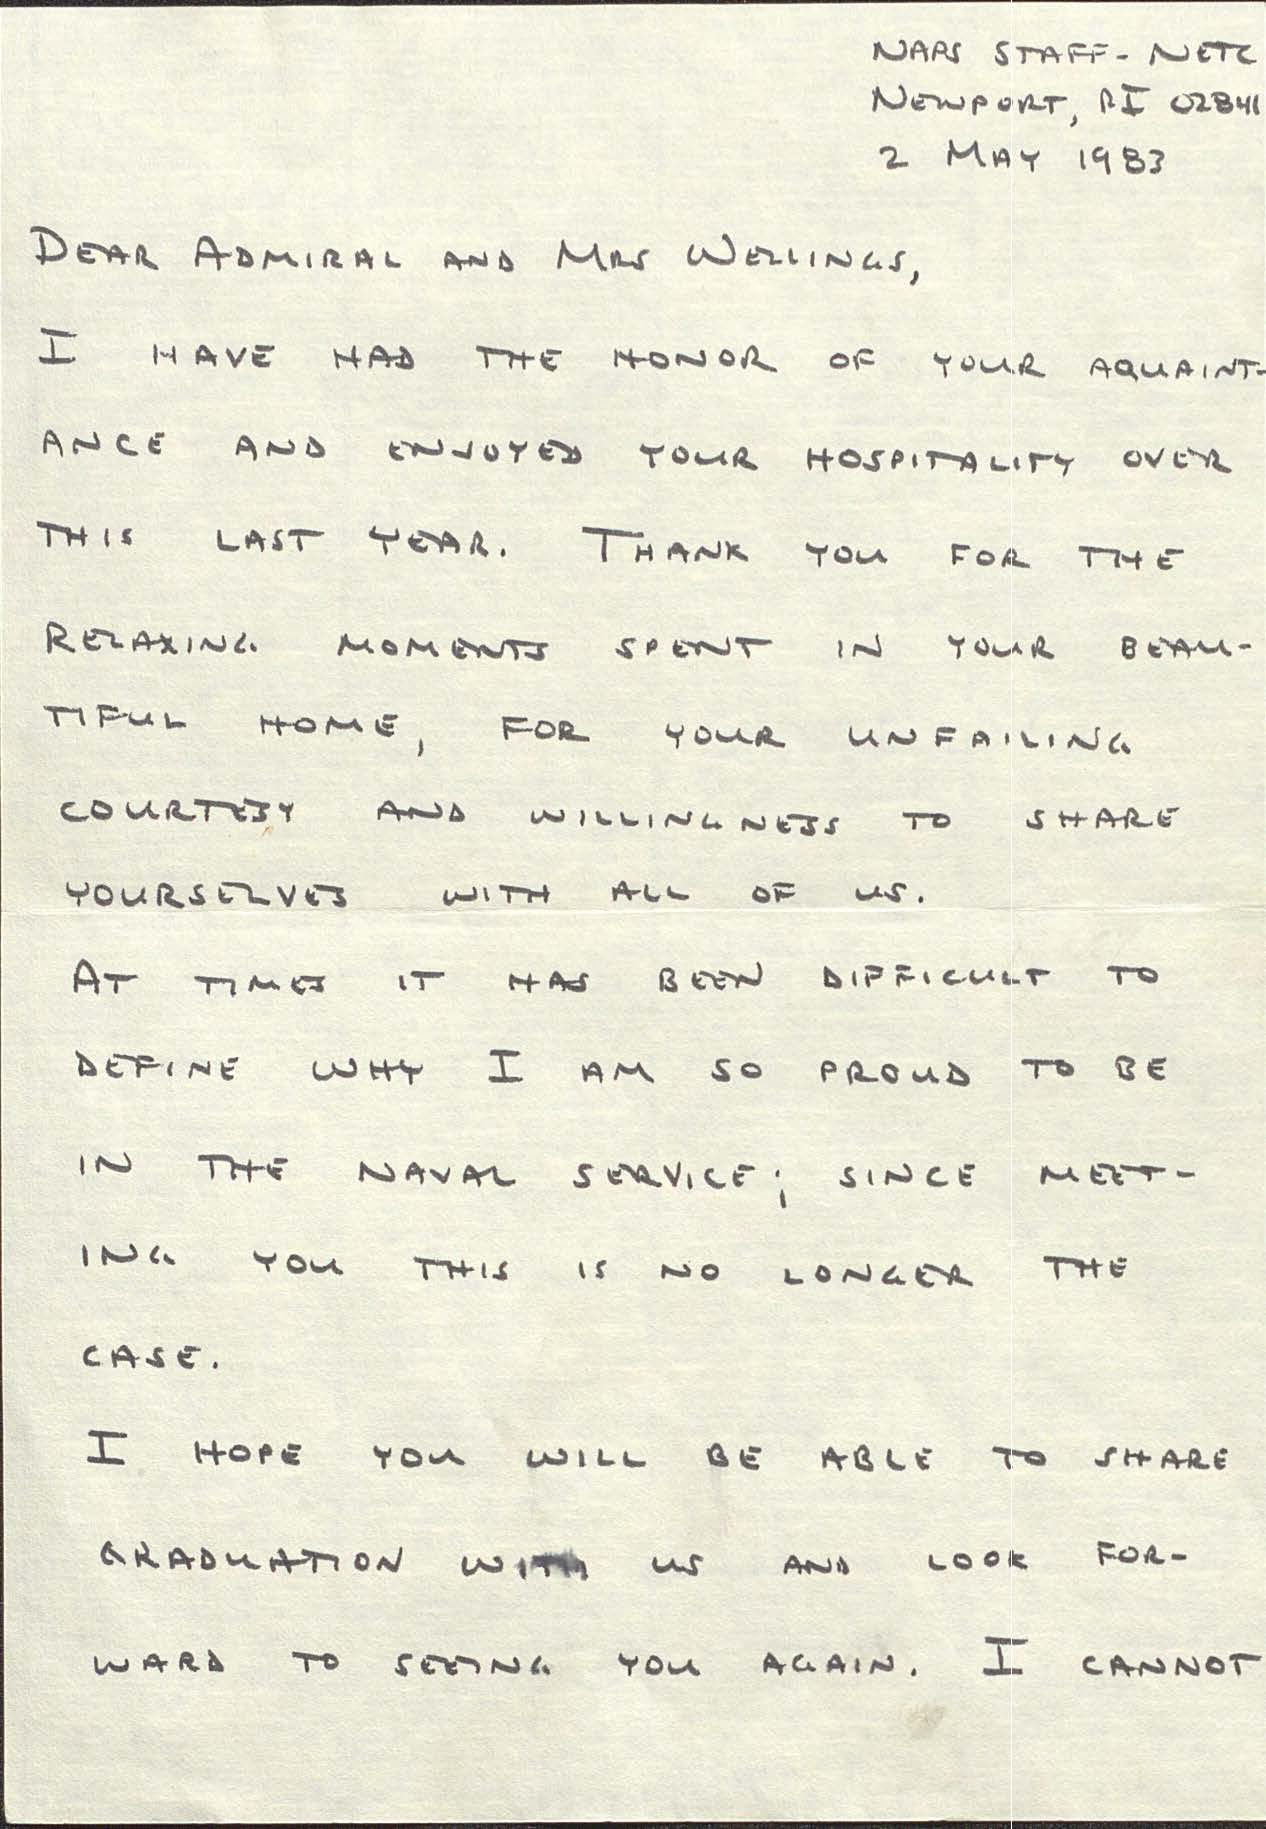 Letter from Major Jim Mattis, USMC to RADM and Mrs. Joseph H. Wellings